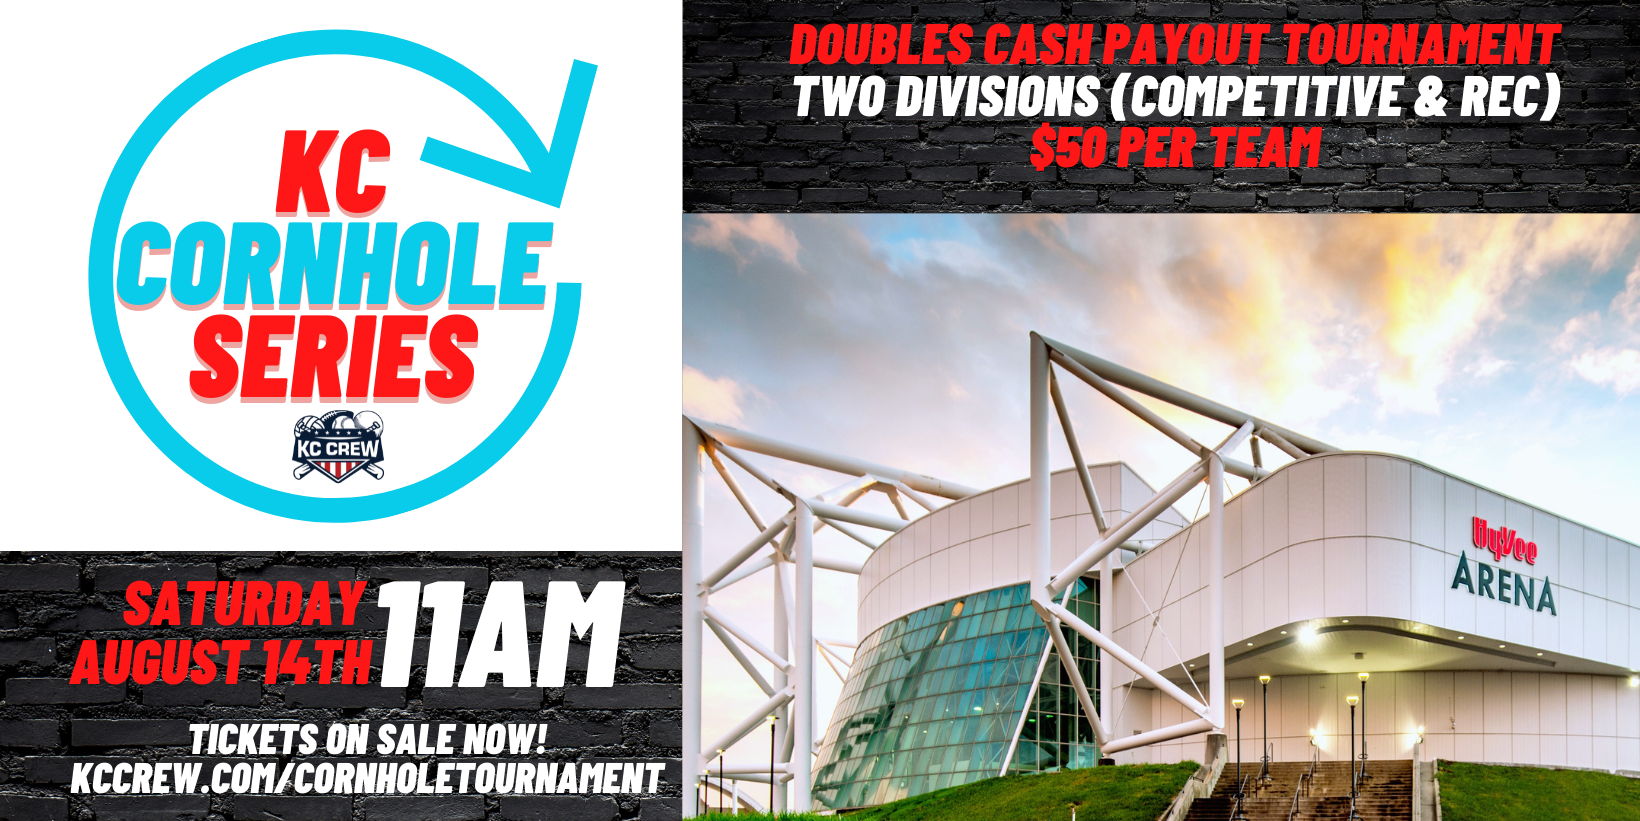 Cornhole Tournament - Social & Competitive | Doubles | Cash Payout promotional image